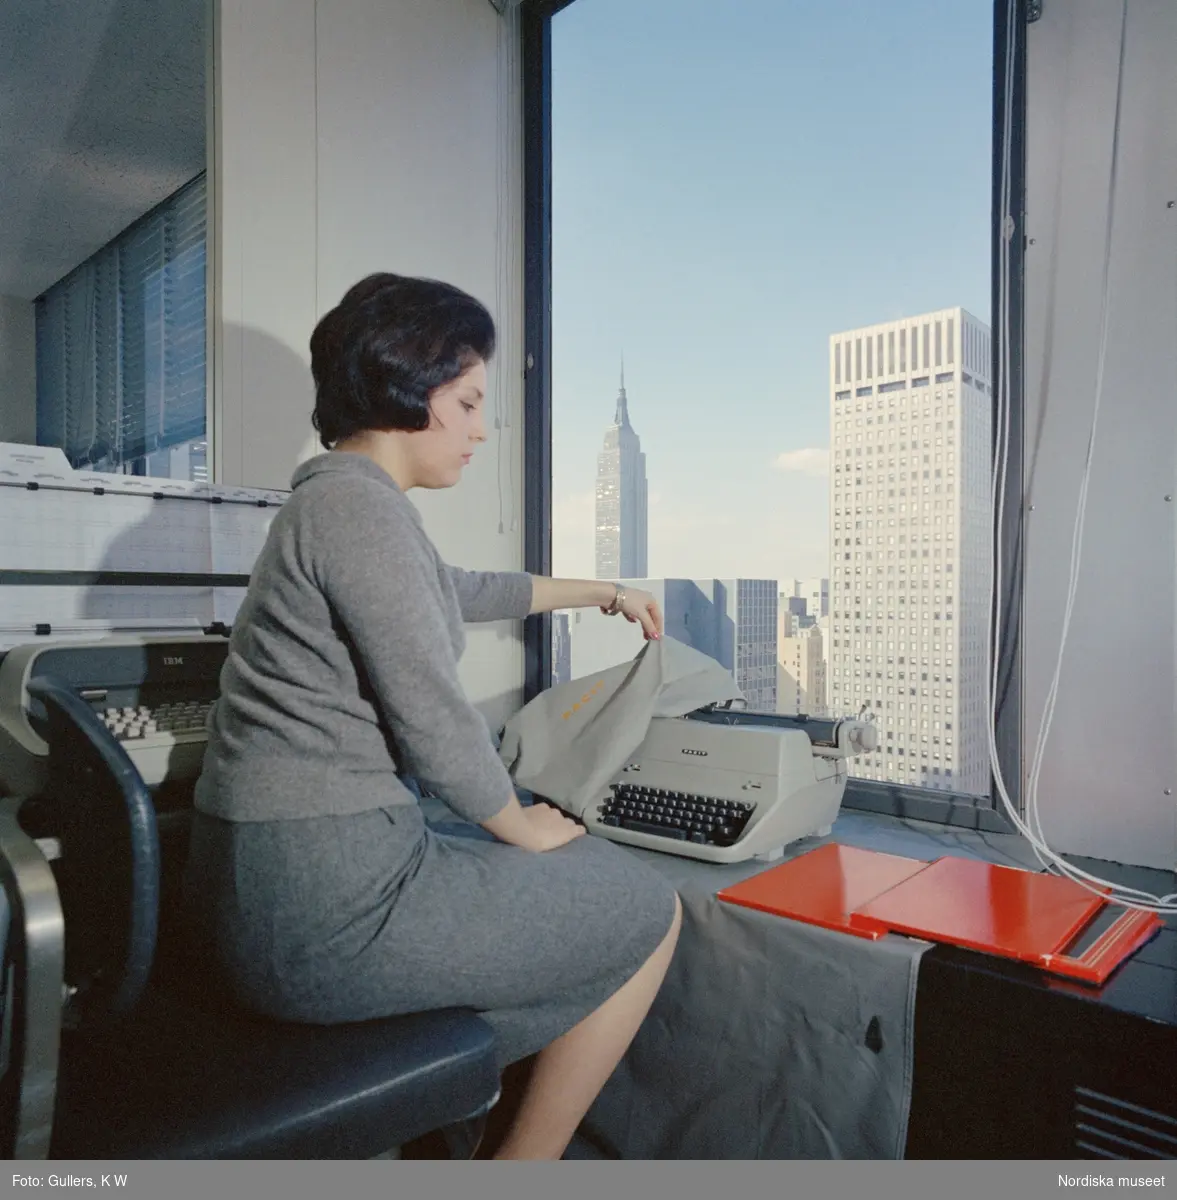 Facit-New York, 1960-tal. En kvinnlig modell avtäcker en Facit skrivmaskin sittande  invid ett fönster med utsikt över Empire state building.